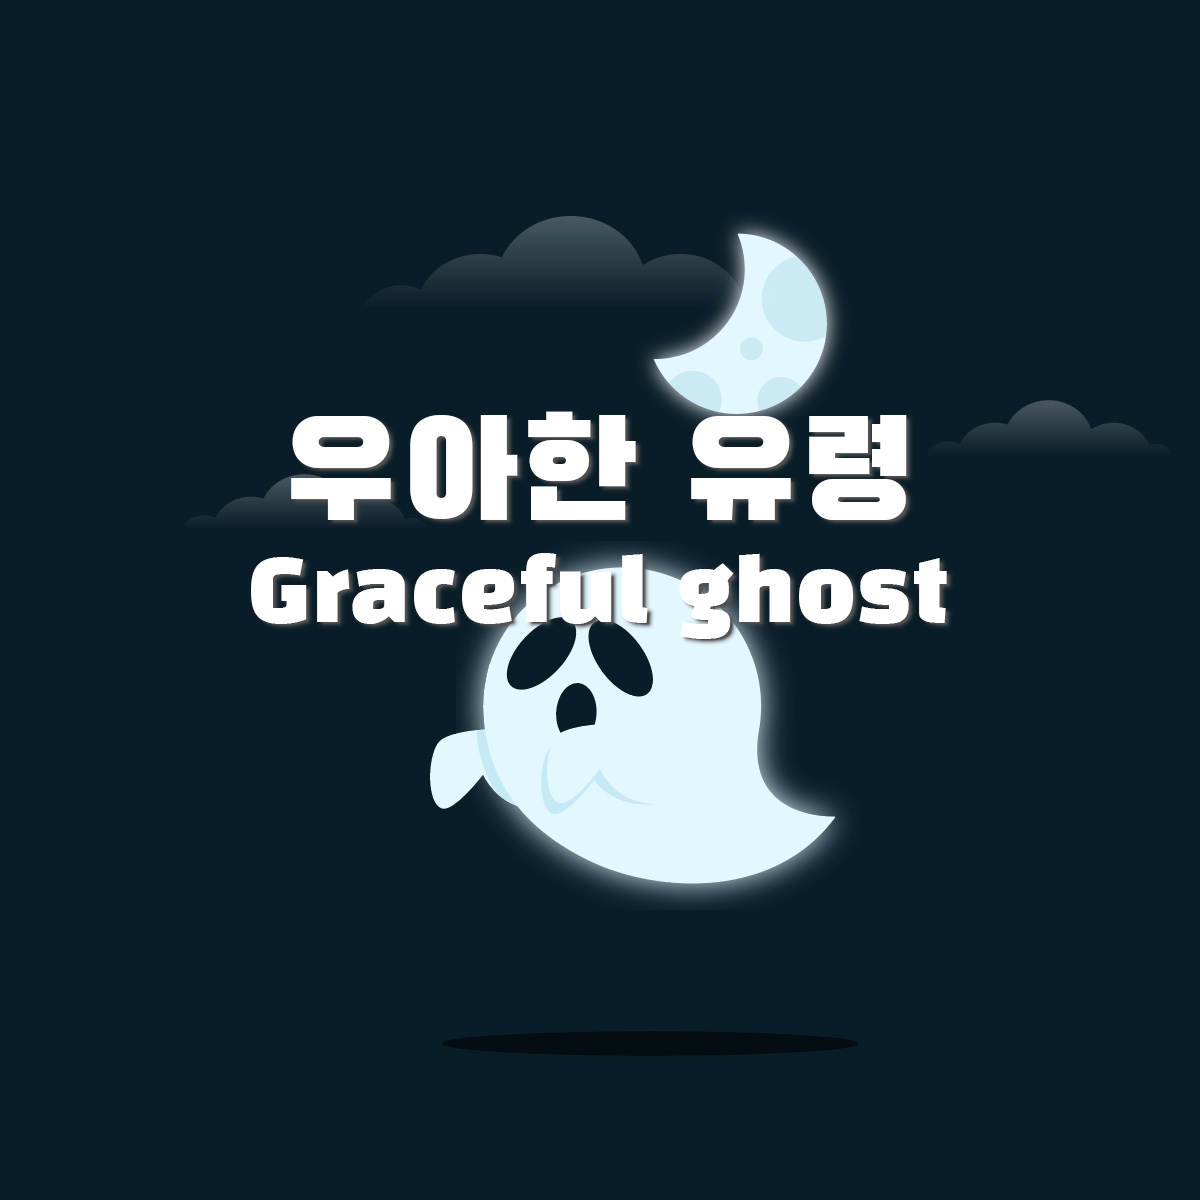 우아한 유령 / graceful ghost